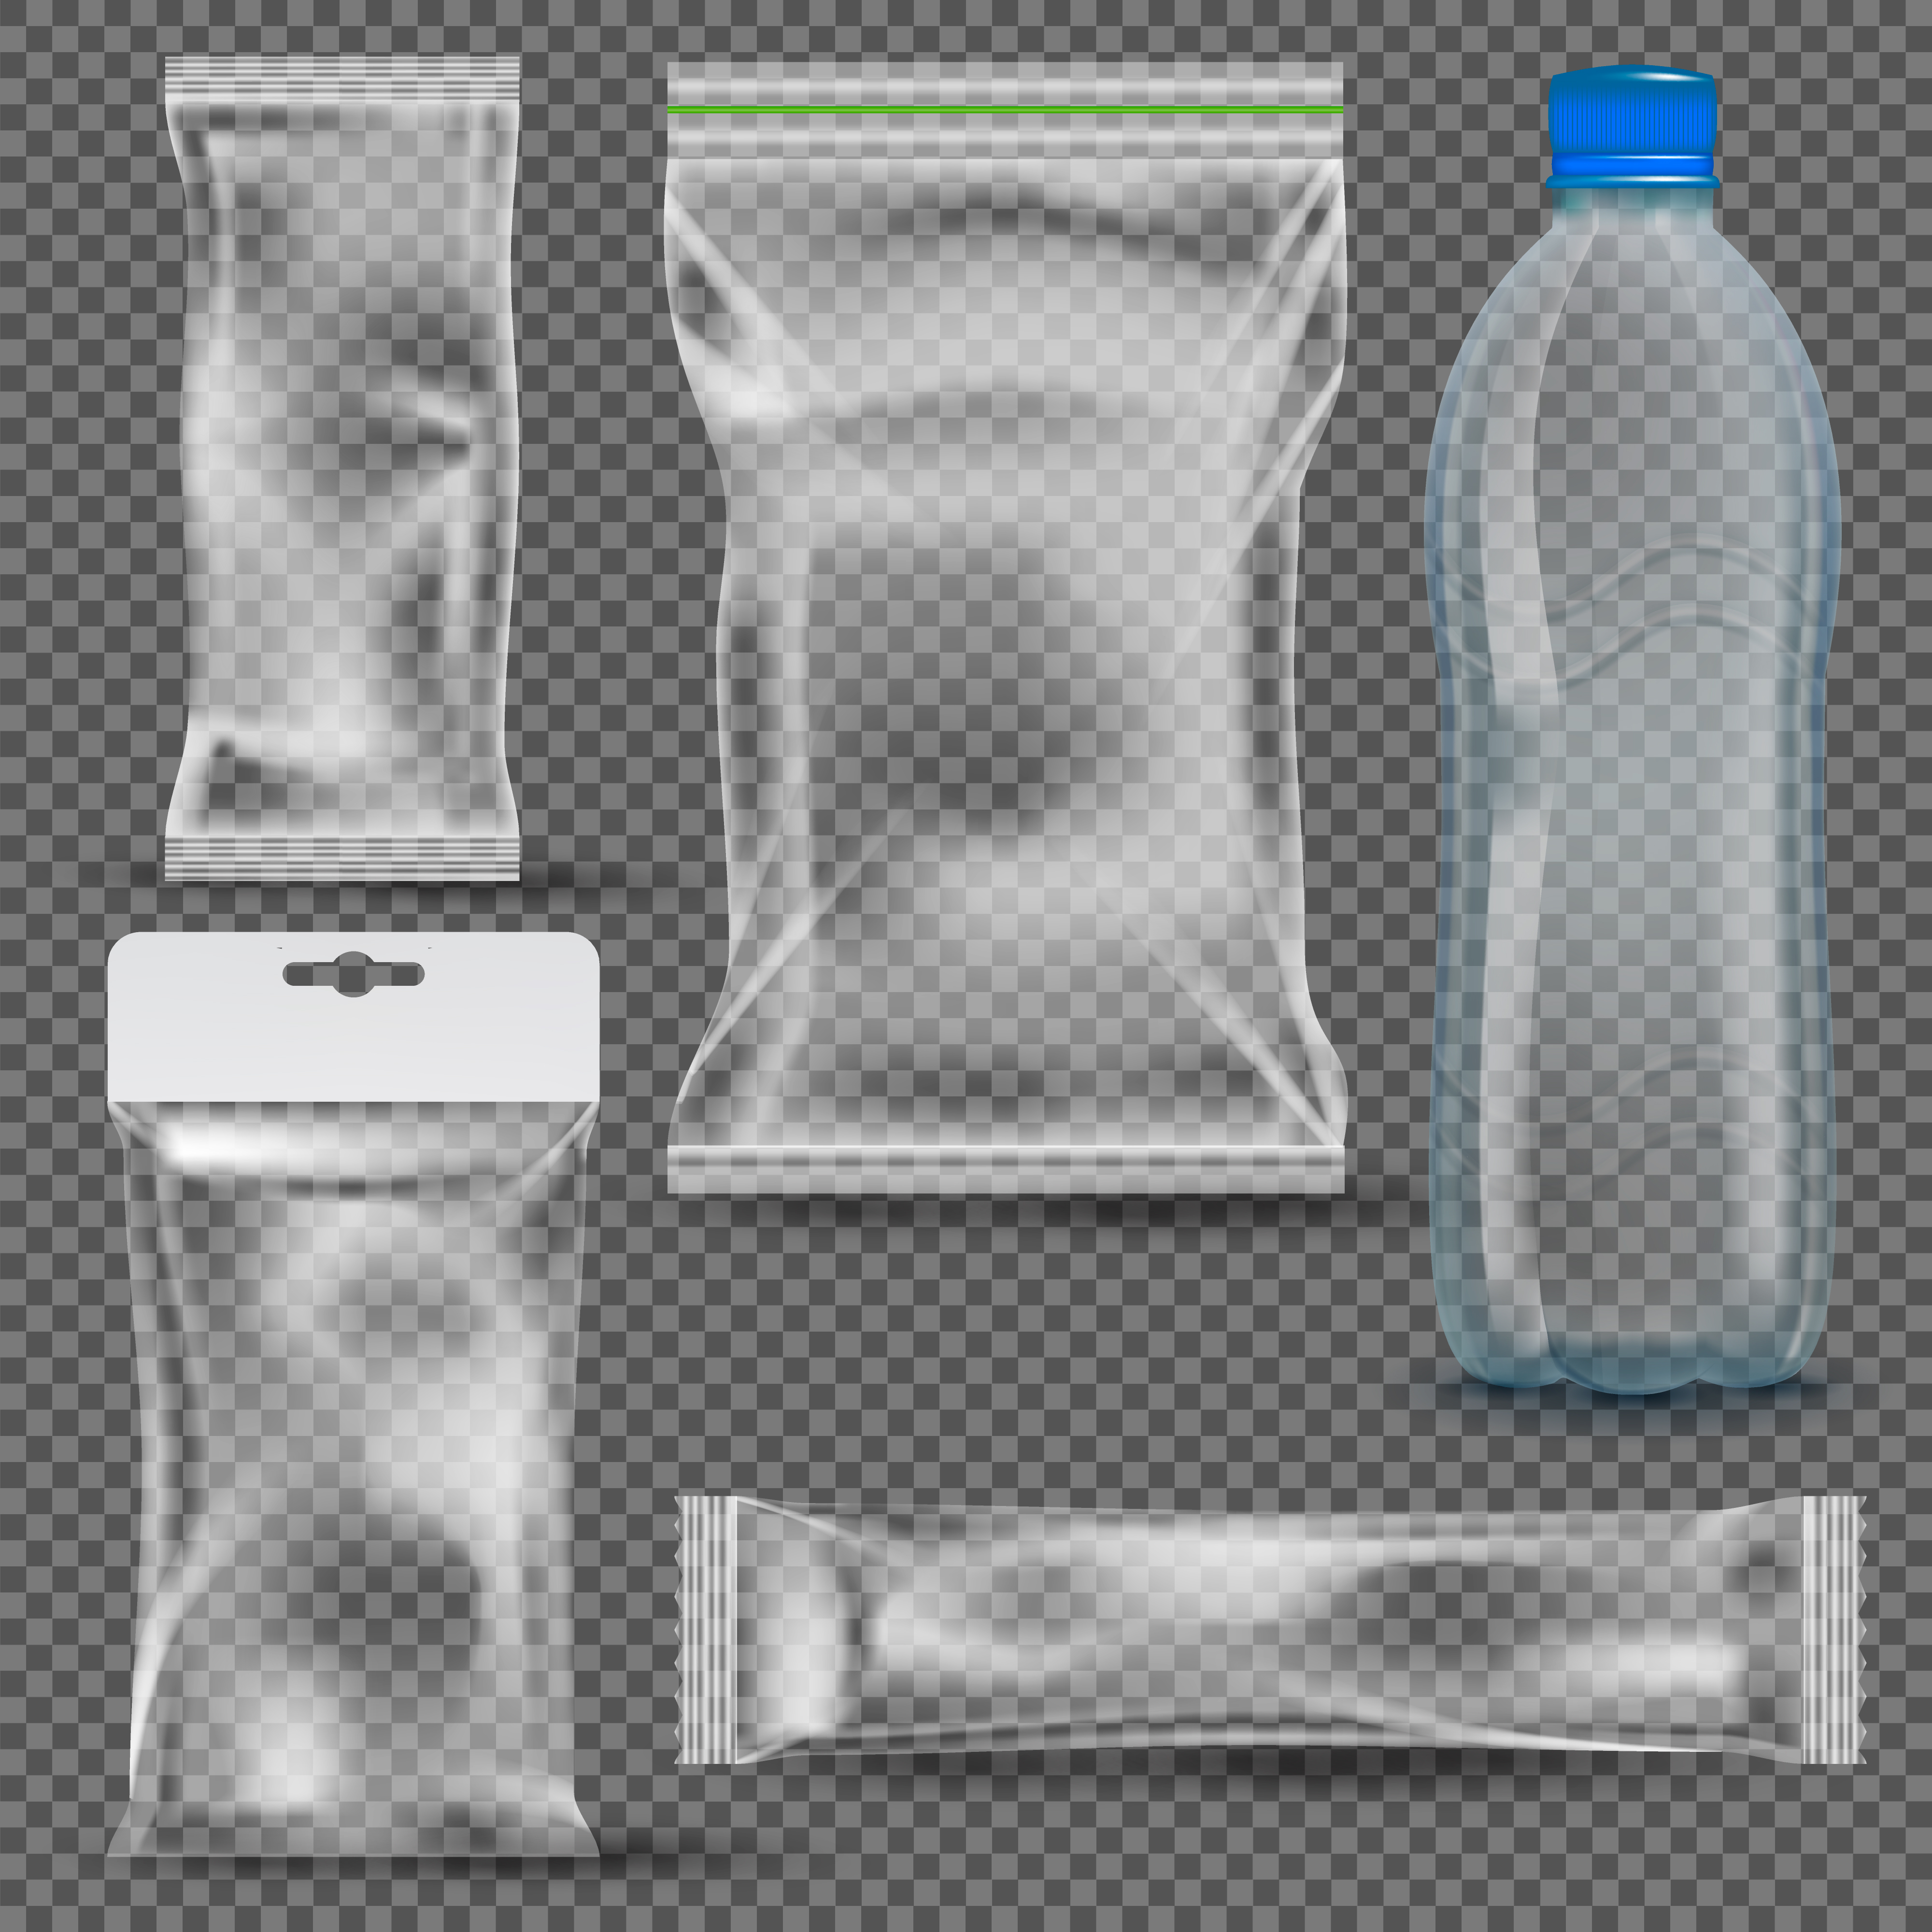 Plastic packages. Прозрачные пакеты для упаковки. Прозрачная упаковка для фотошопа. Прозрачная полиэтиленовая упаковка. Мокап пакета полиэтиленового прозрачного.